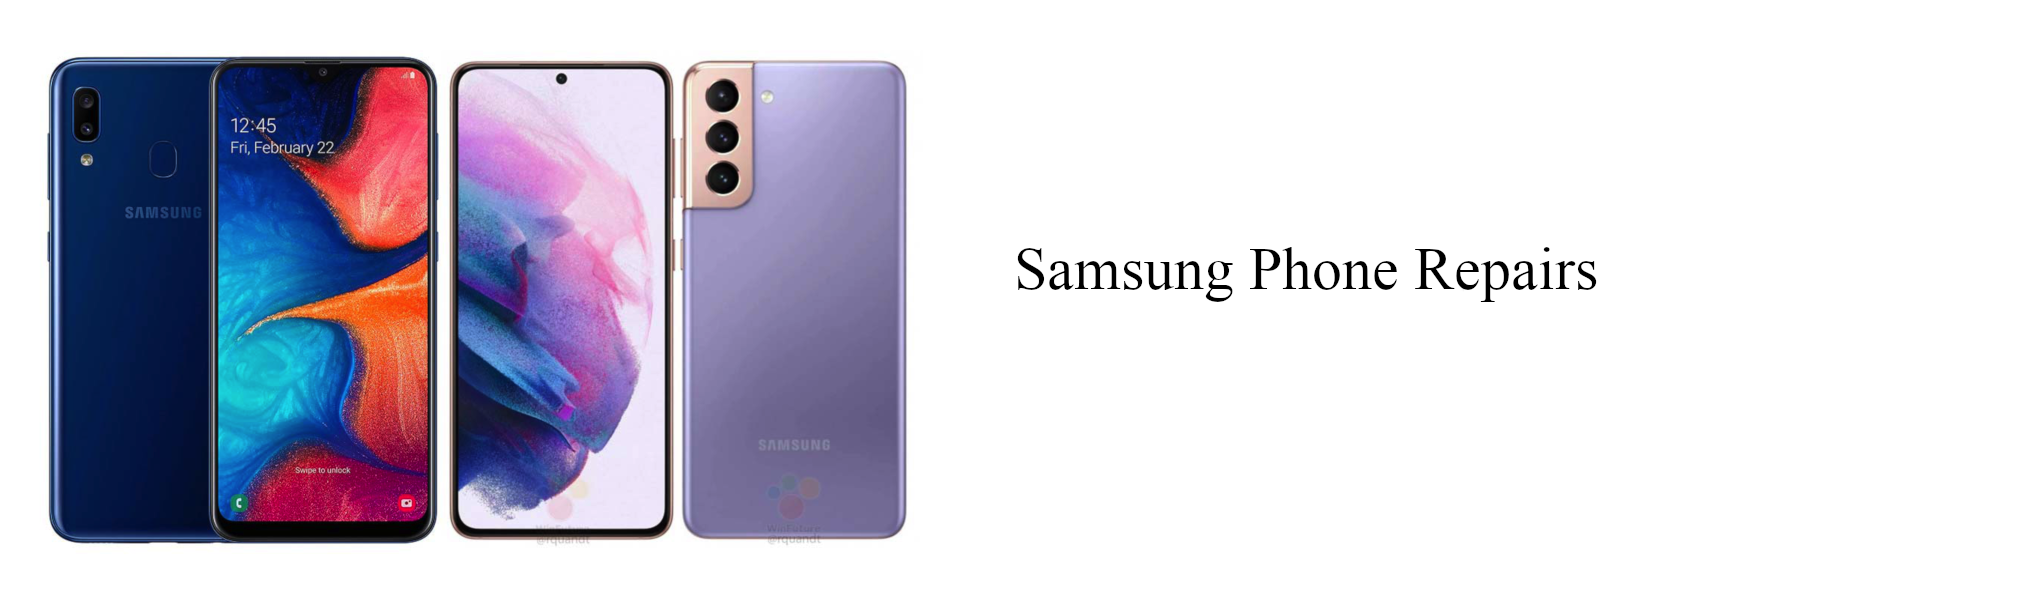 Samsung Phone Repairs.png